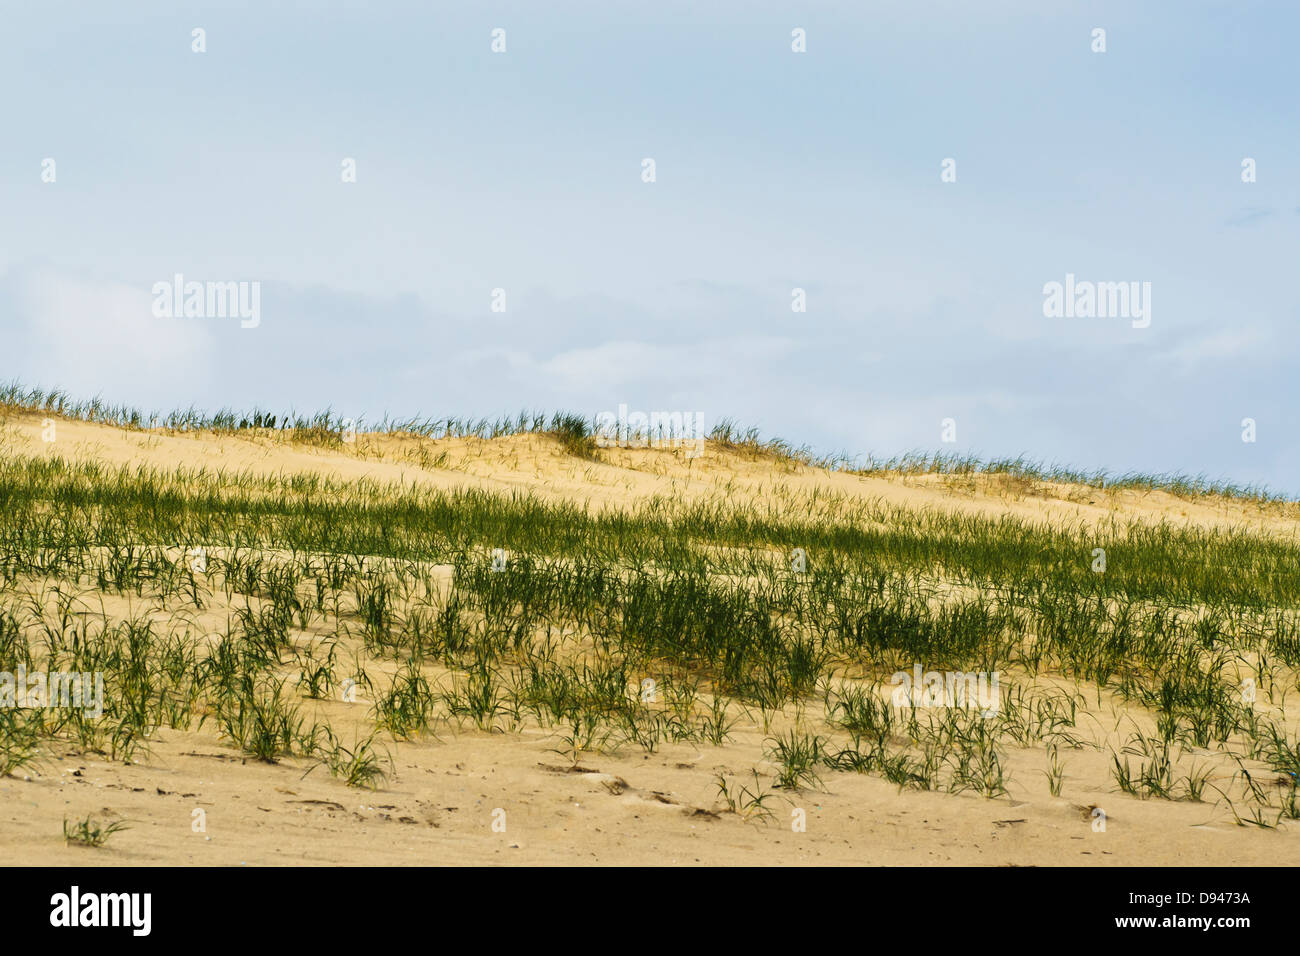 Erba sulla spiaggia sabbiosa con il mare in background Foto Stock